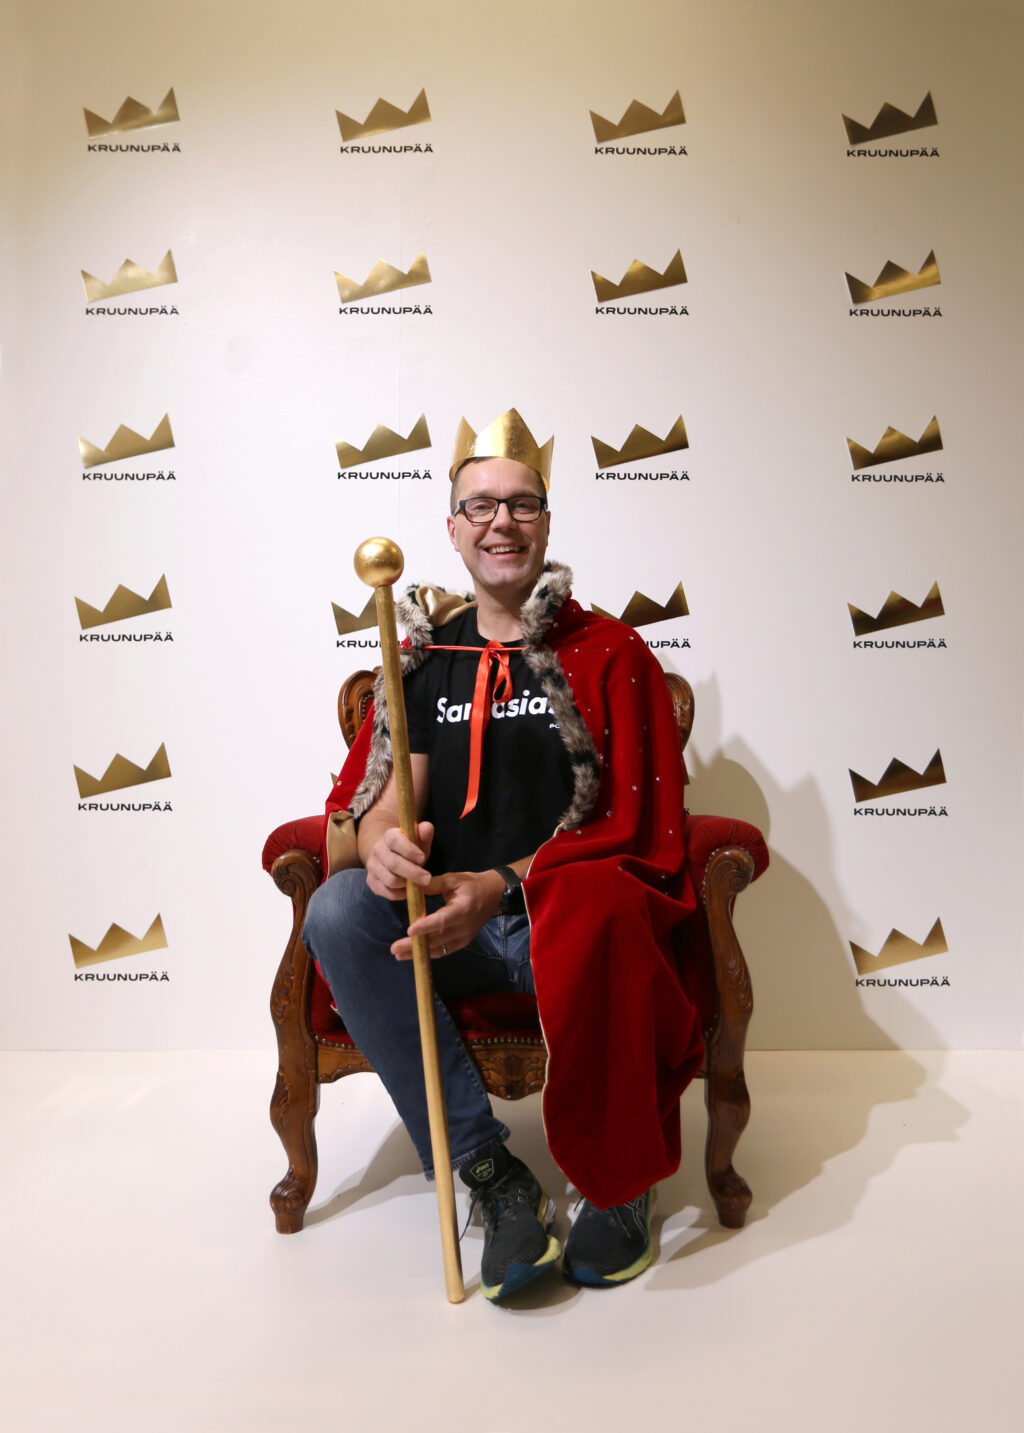 Kaupunginjohtajalla on asusteinaan kultainen kruunu ja valtikka sekä viitta. Taustalla on kultaisia Kruunupään logoja.